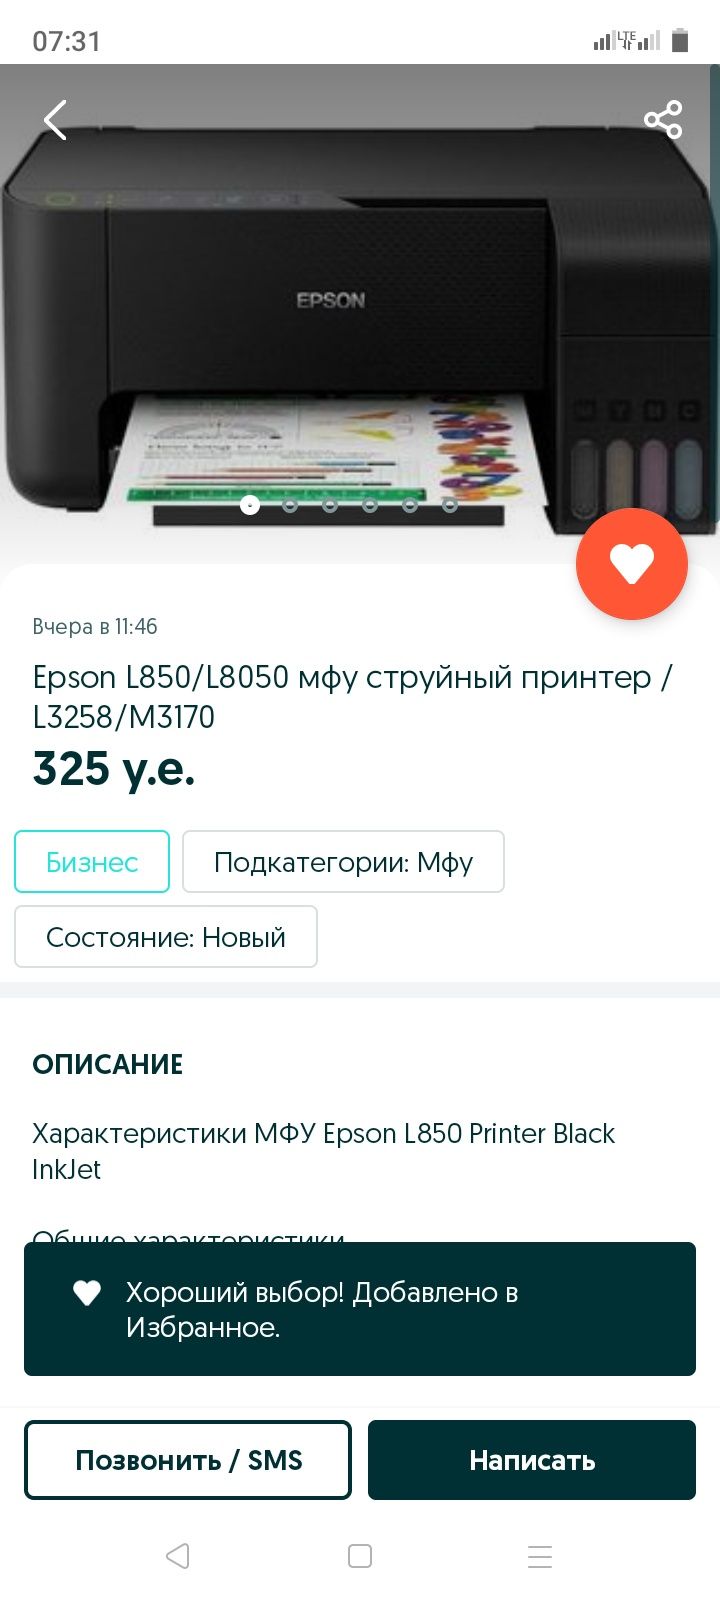 Epson L850/L8050 струйный принтер мфу/L3258/M3170